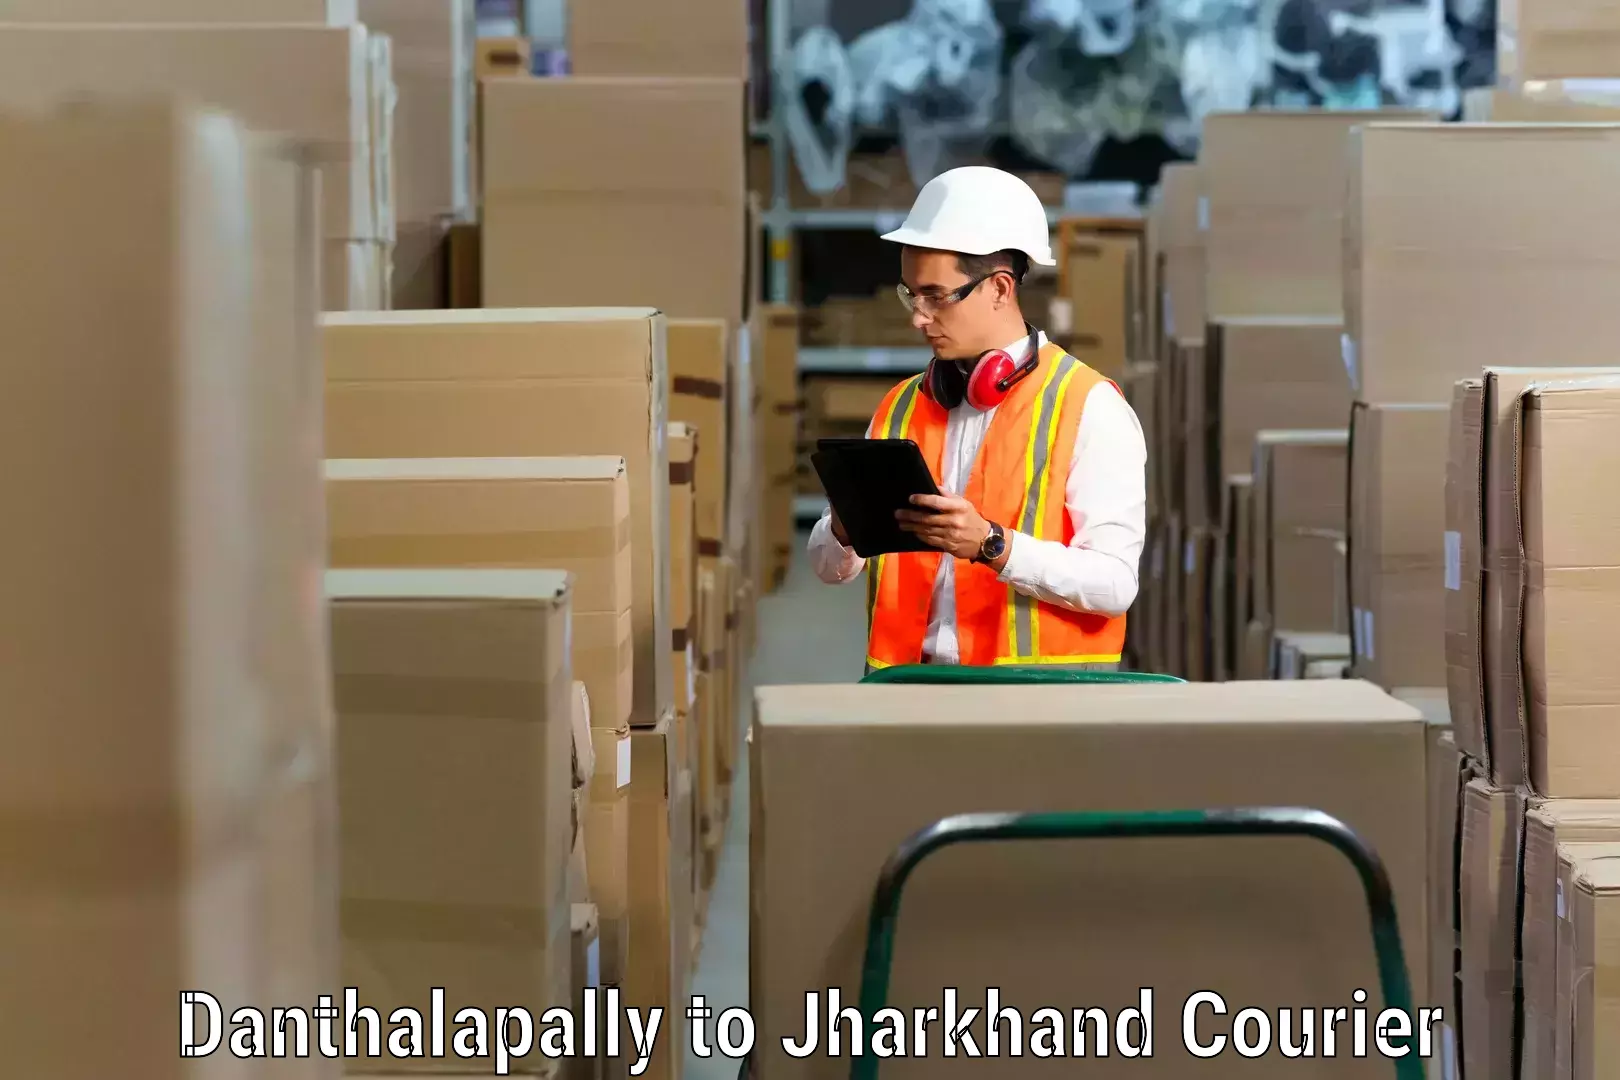 Furniture transport service Danthalapally to Chandankiyari